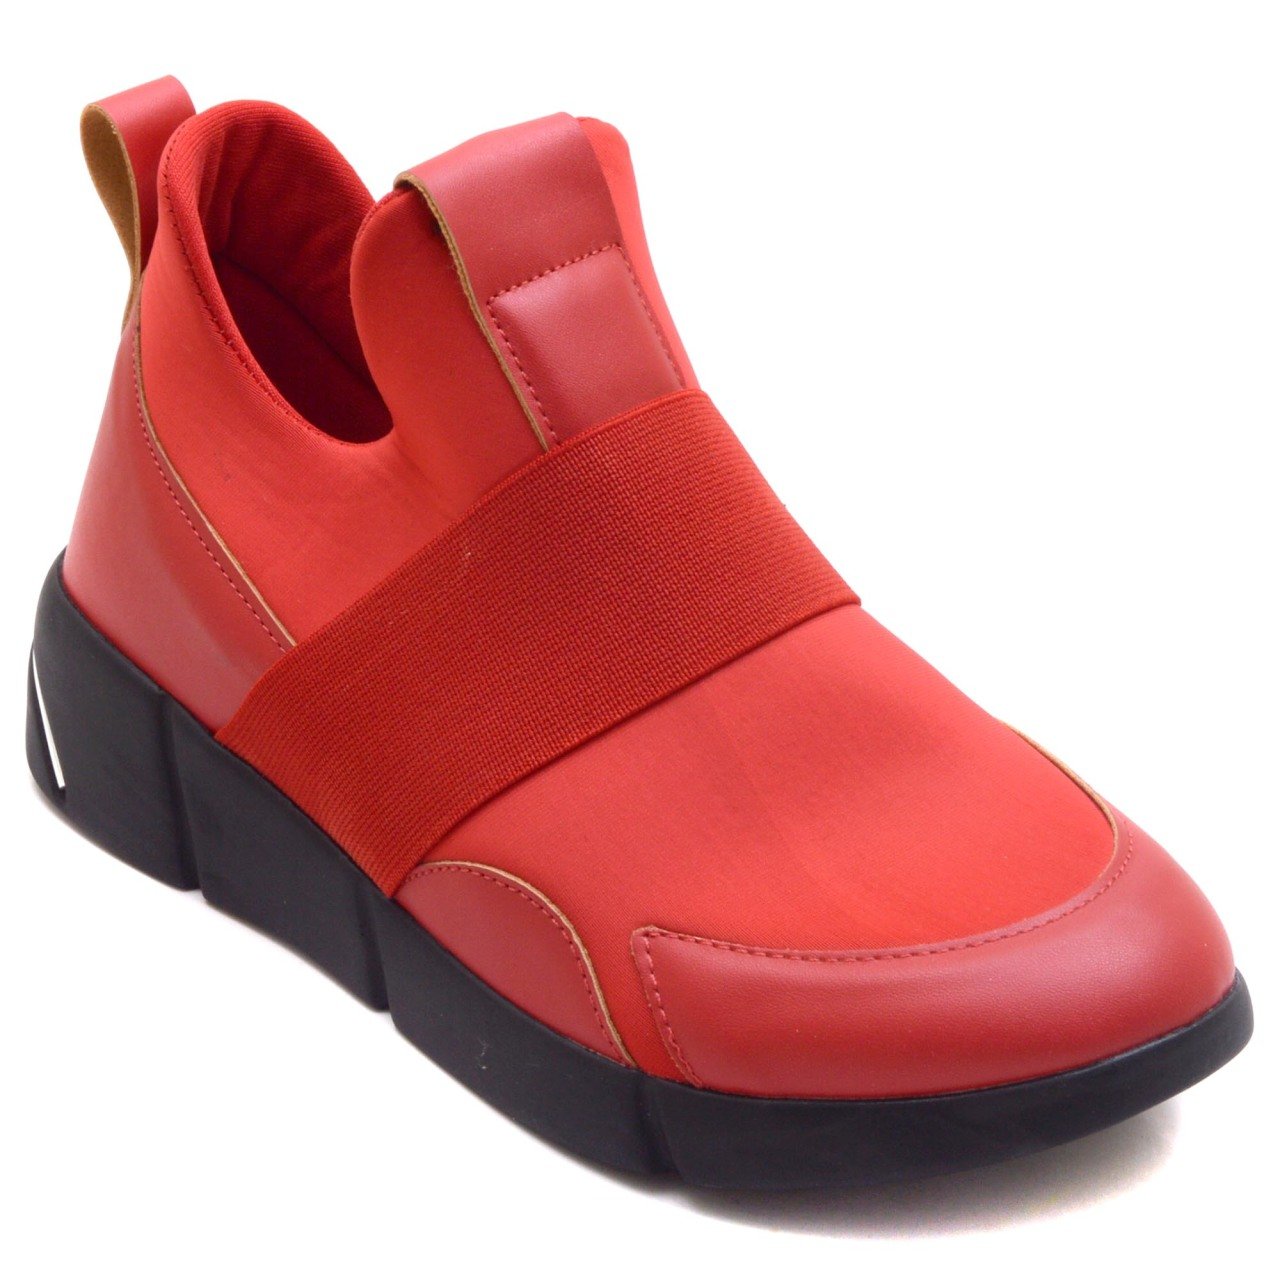 4721-R Spor Model Kadın Ayakkabı - Kırmızı